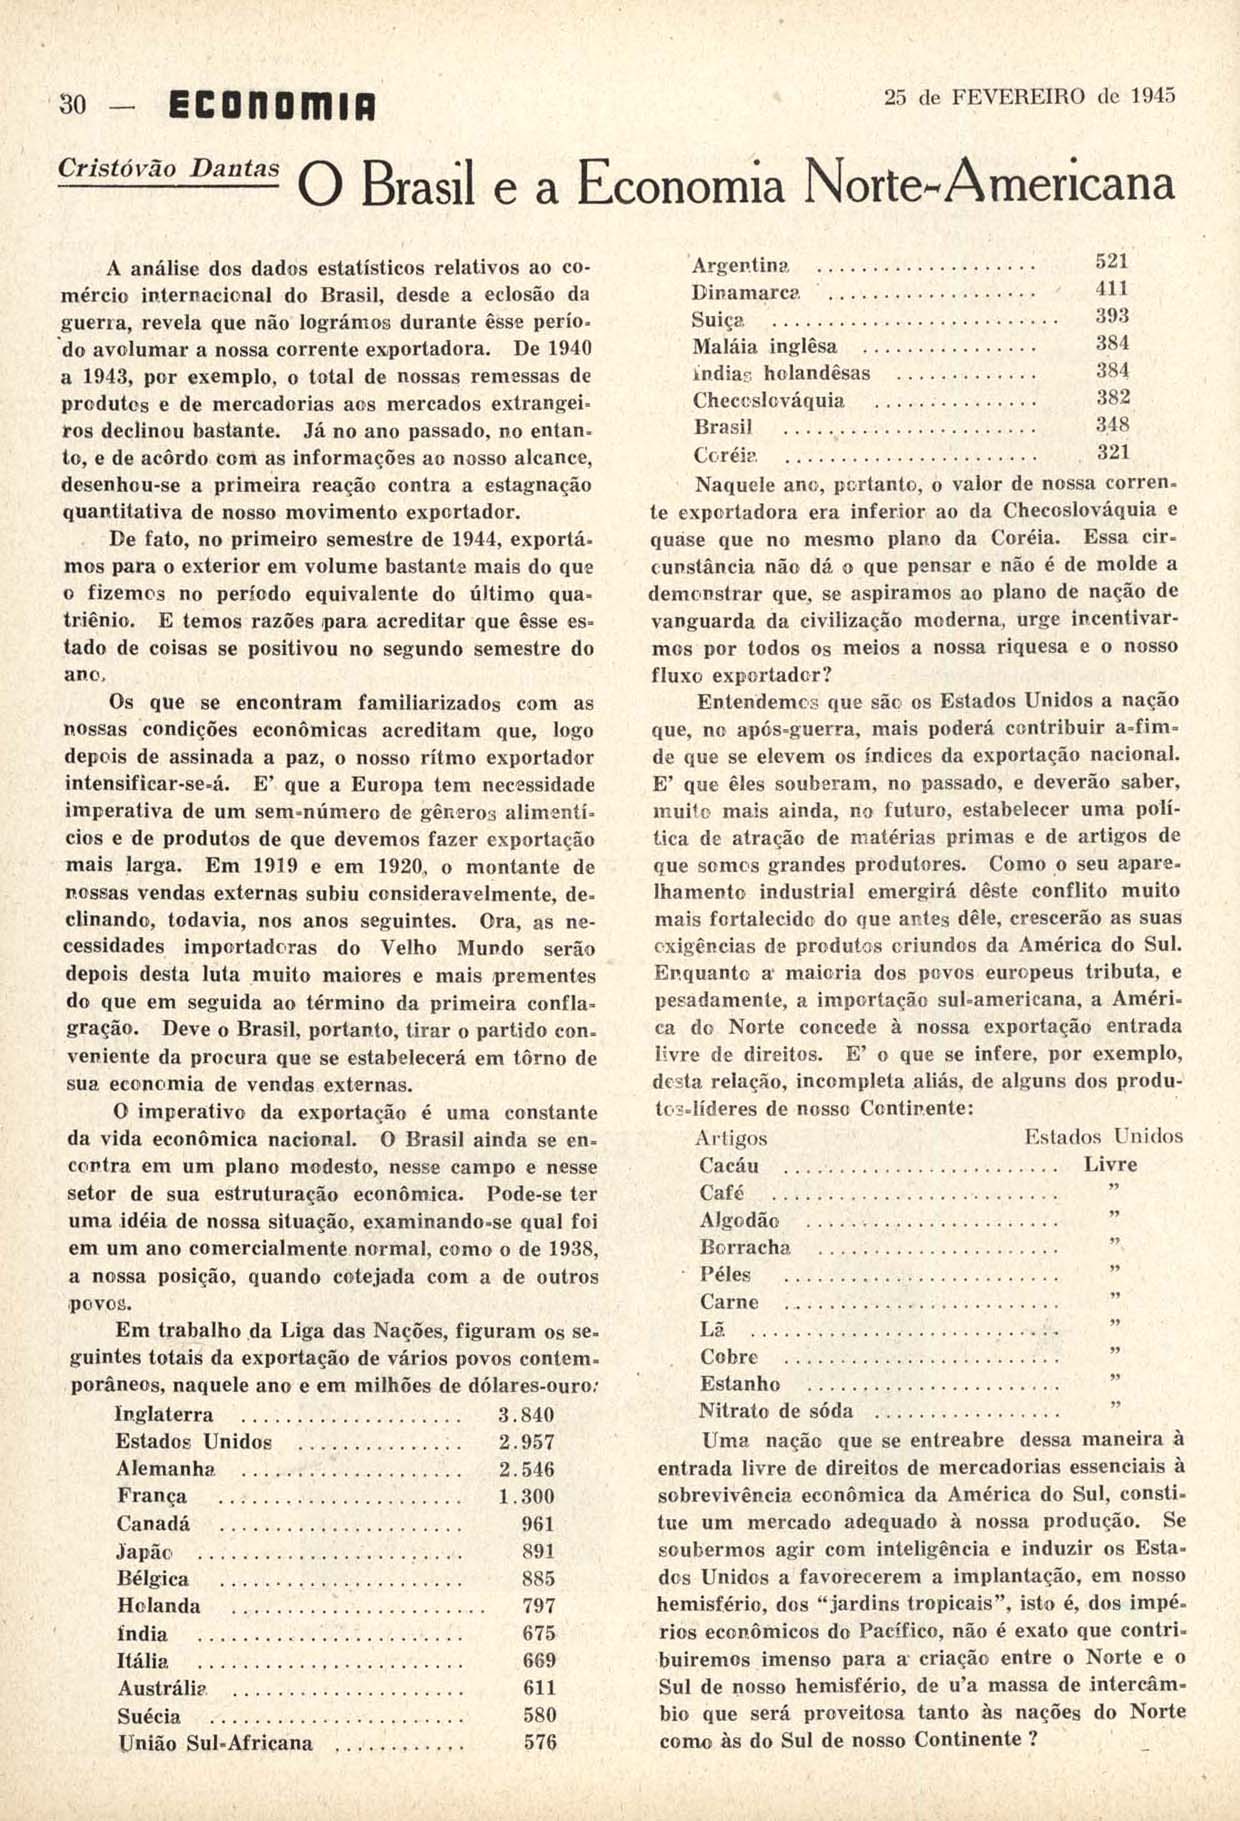 DANTAS, Cristovam. O Brasil e a Economia Norte-Americana. Economia, Rio de Janeiro, n. 69, p. 30, fev. 1945.